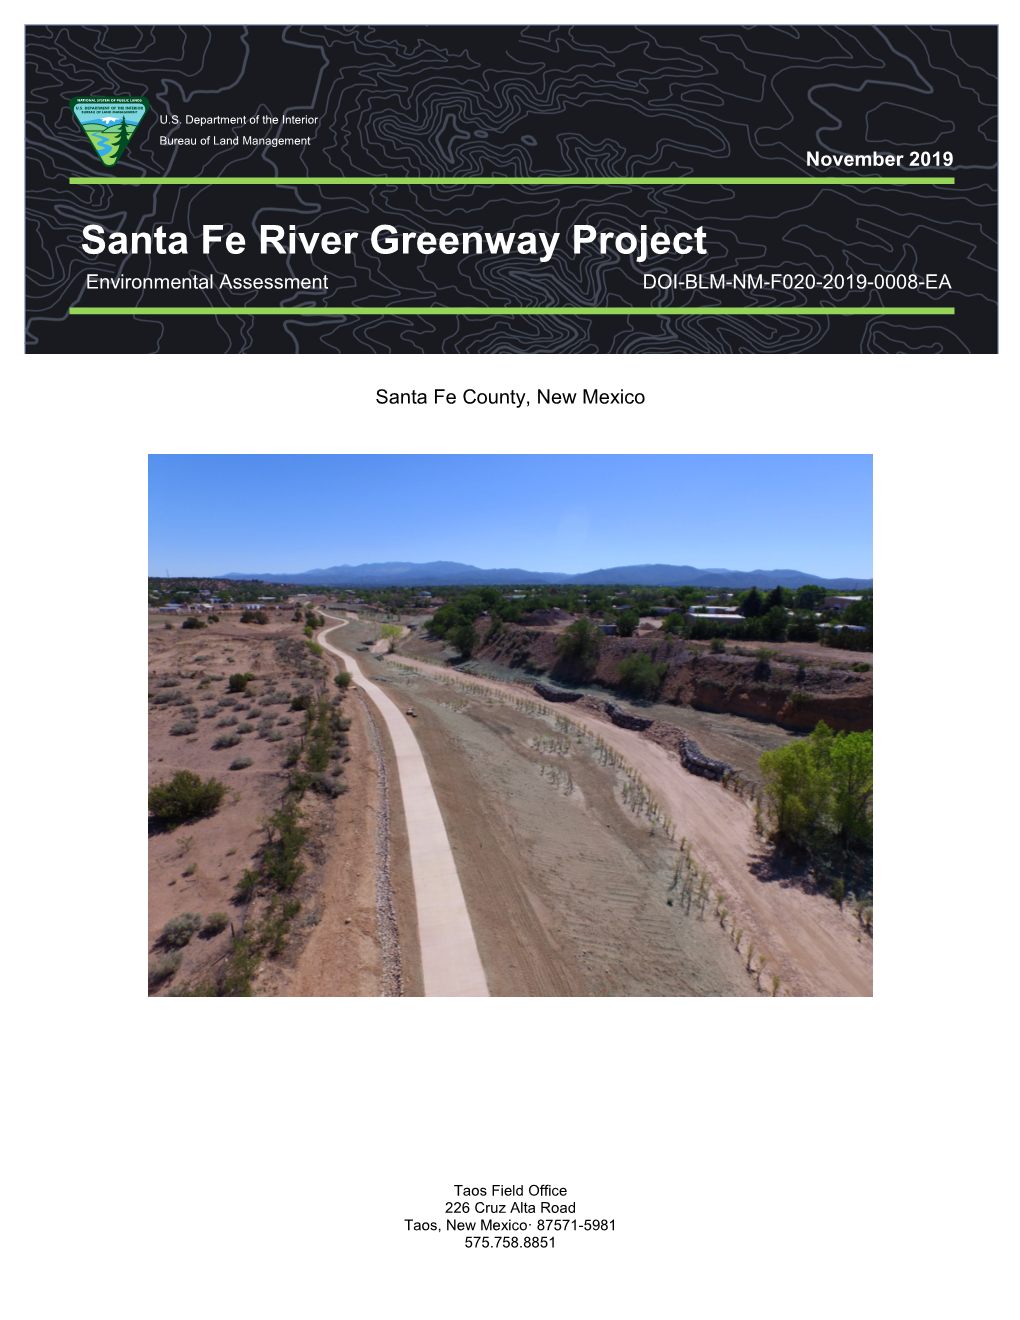 Santa Fe River Greenway Project Environmental Assessment DOI-BLM-NM-F020-2019-0008-EA